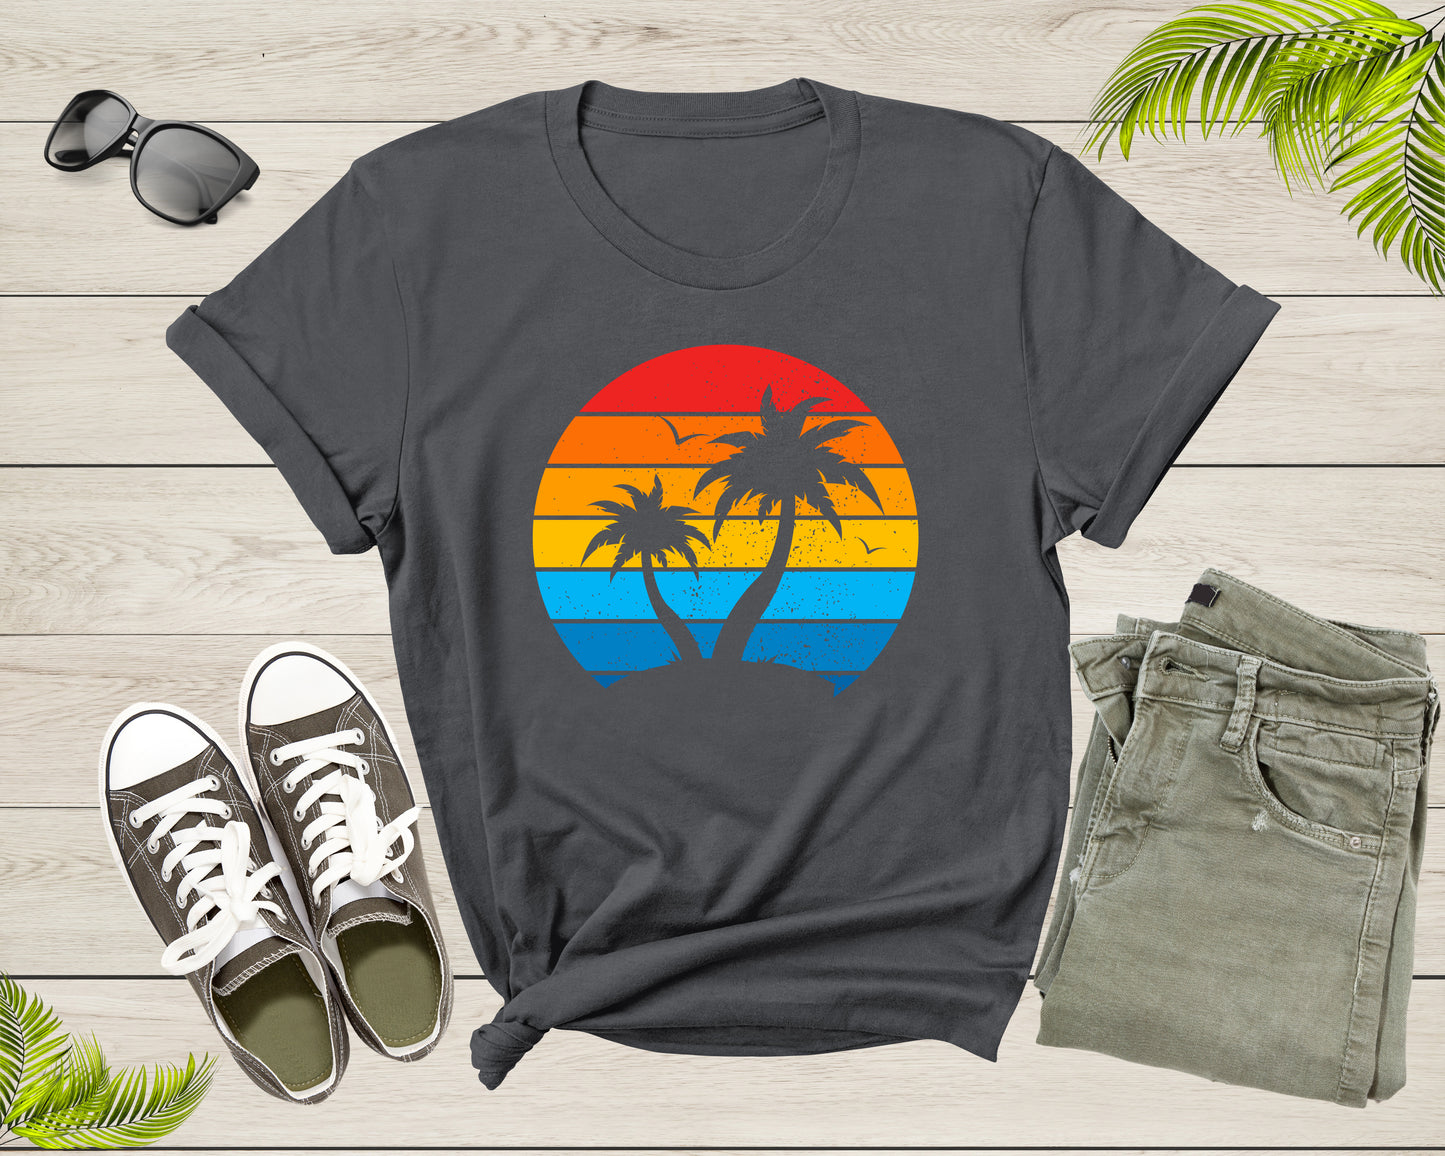 Palm Trees Sunset Sunrise Sea Ocean View Nature Flying Birds T-Shirt Palm Tree Lover Gift T Shirt for Men Women Kids Boys Girls Tshirt